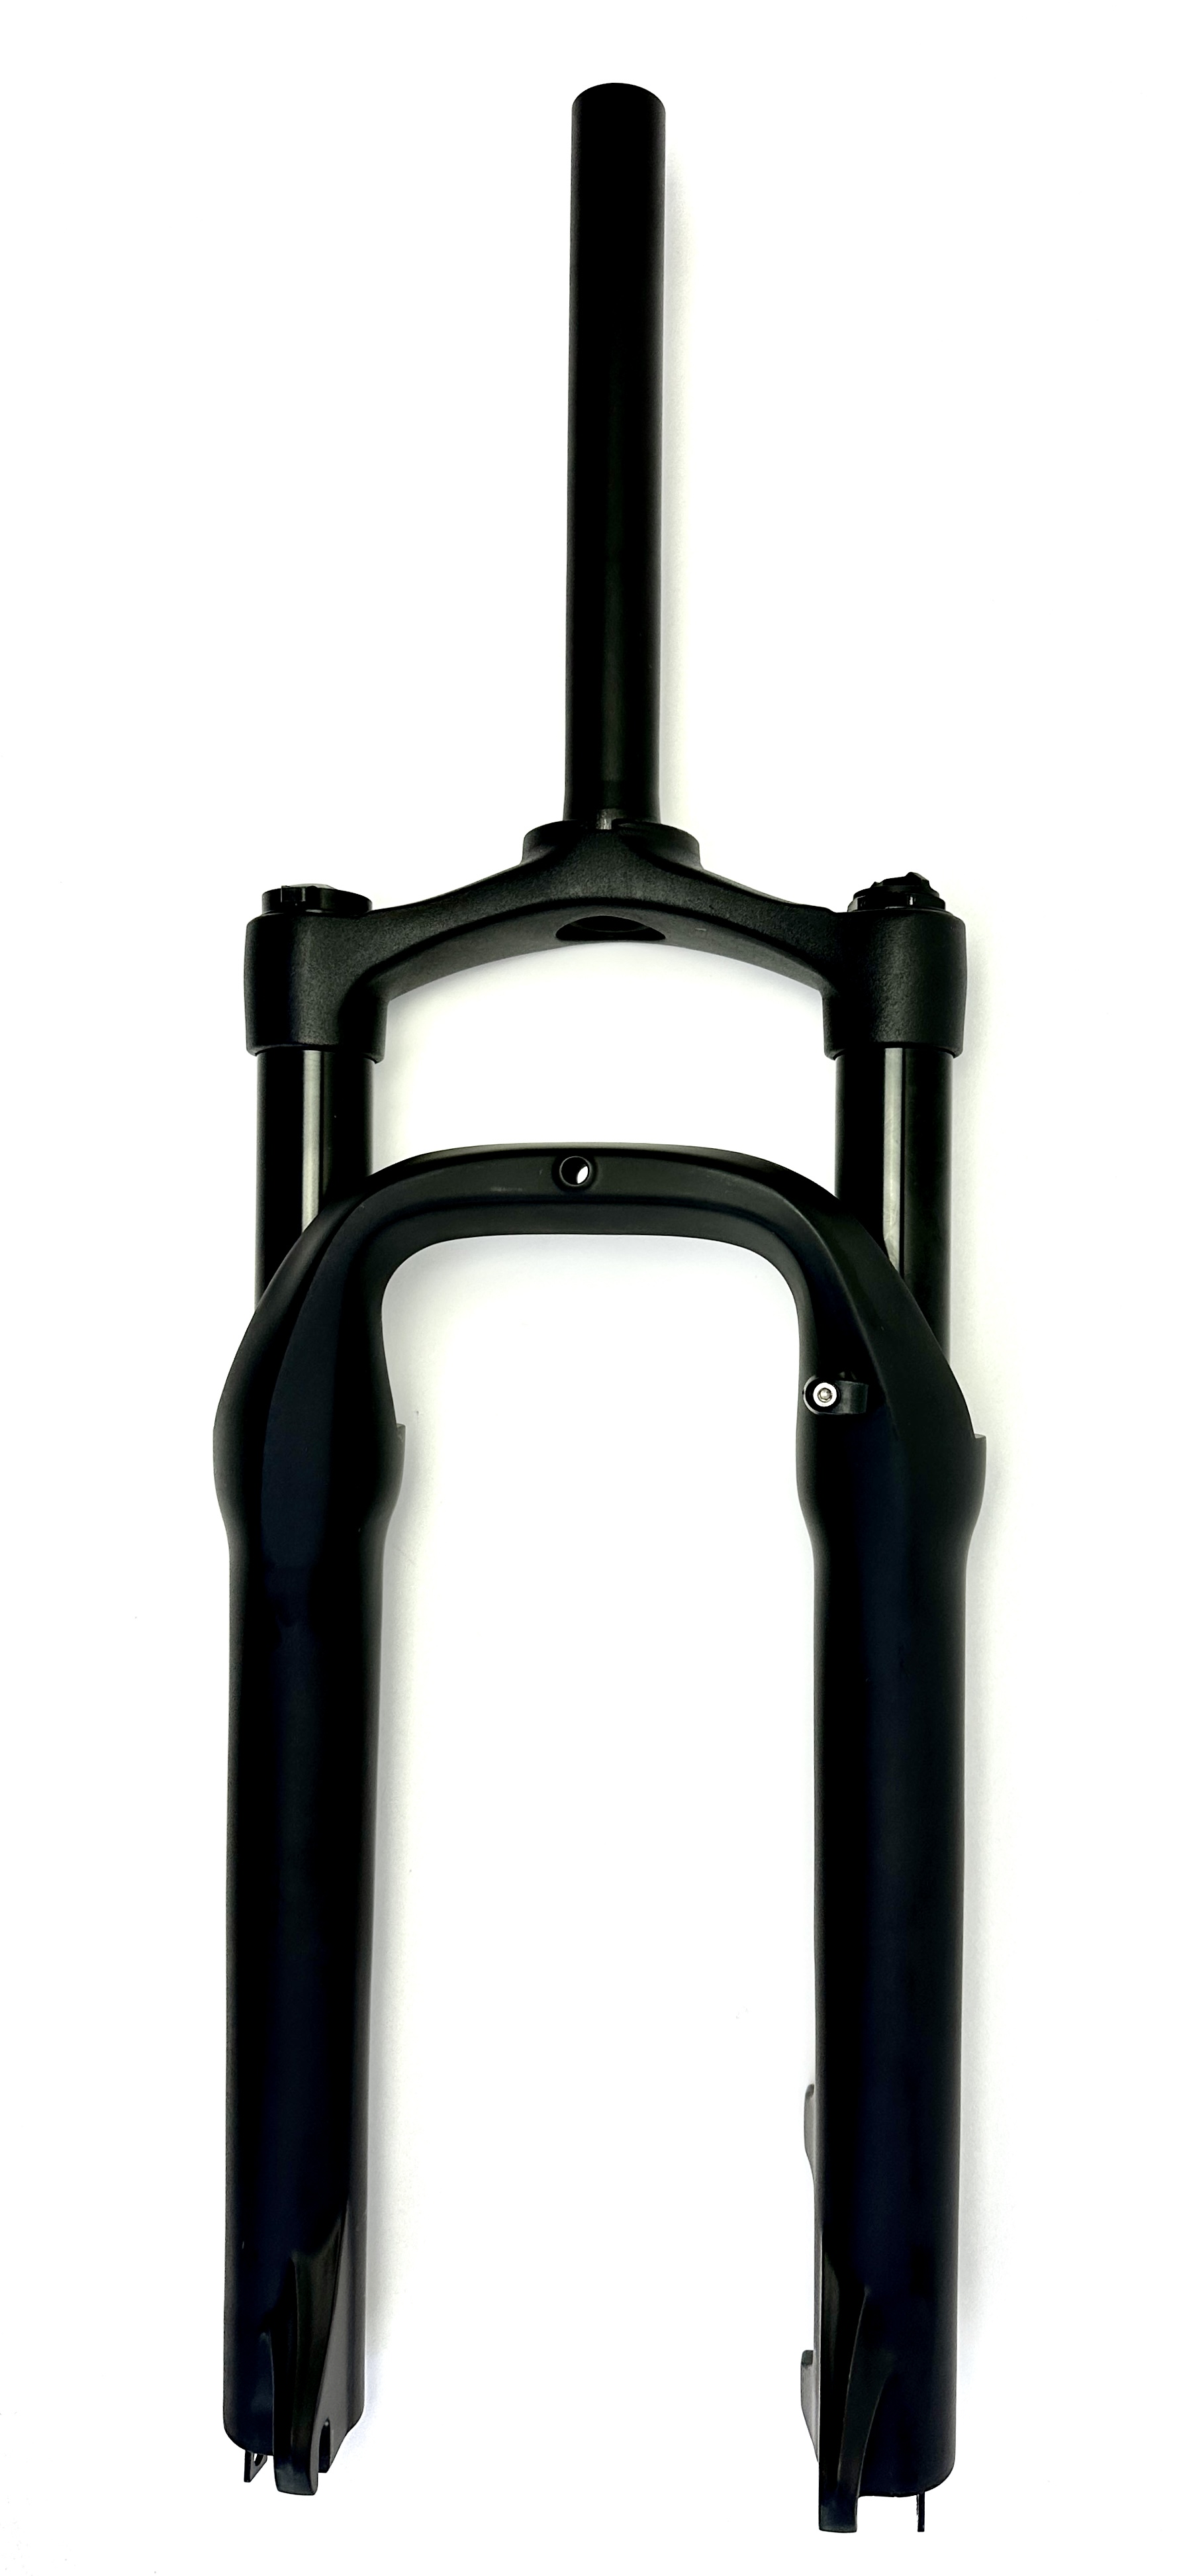 UD 204 Forcella per fatbike a sospensione pneumatica, nero opaco